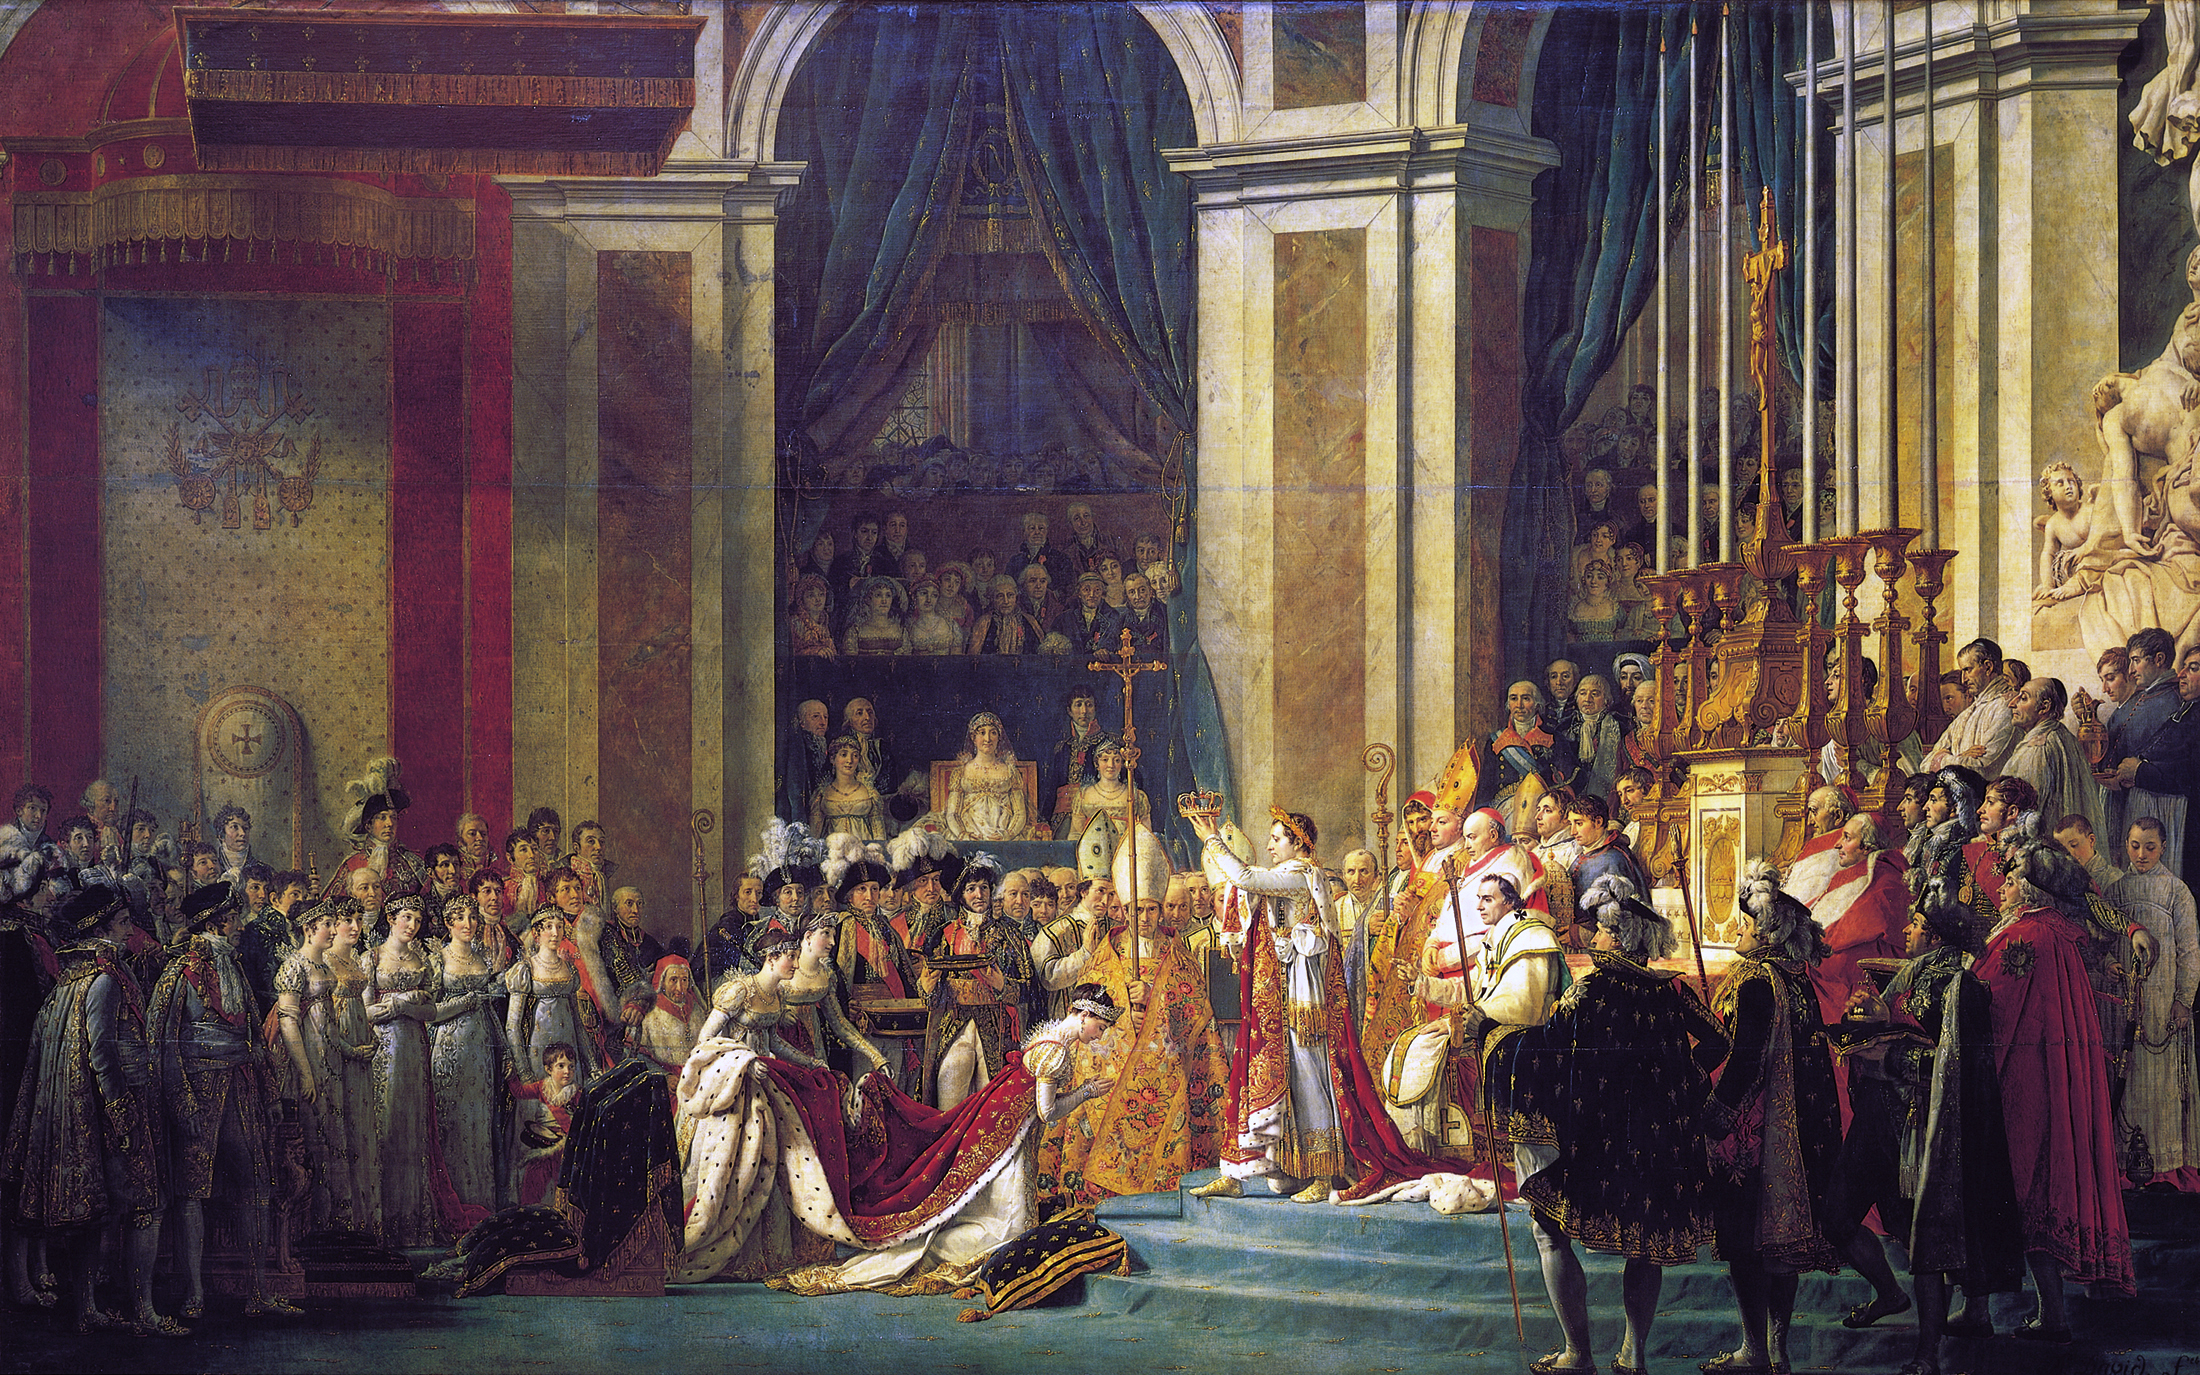 Le Sacre de l'Empereur Jacques-Louis_David,_The_Coronation_of_Napoleon